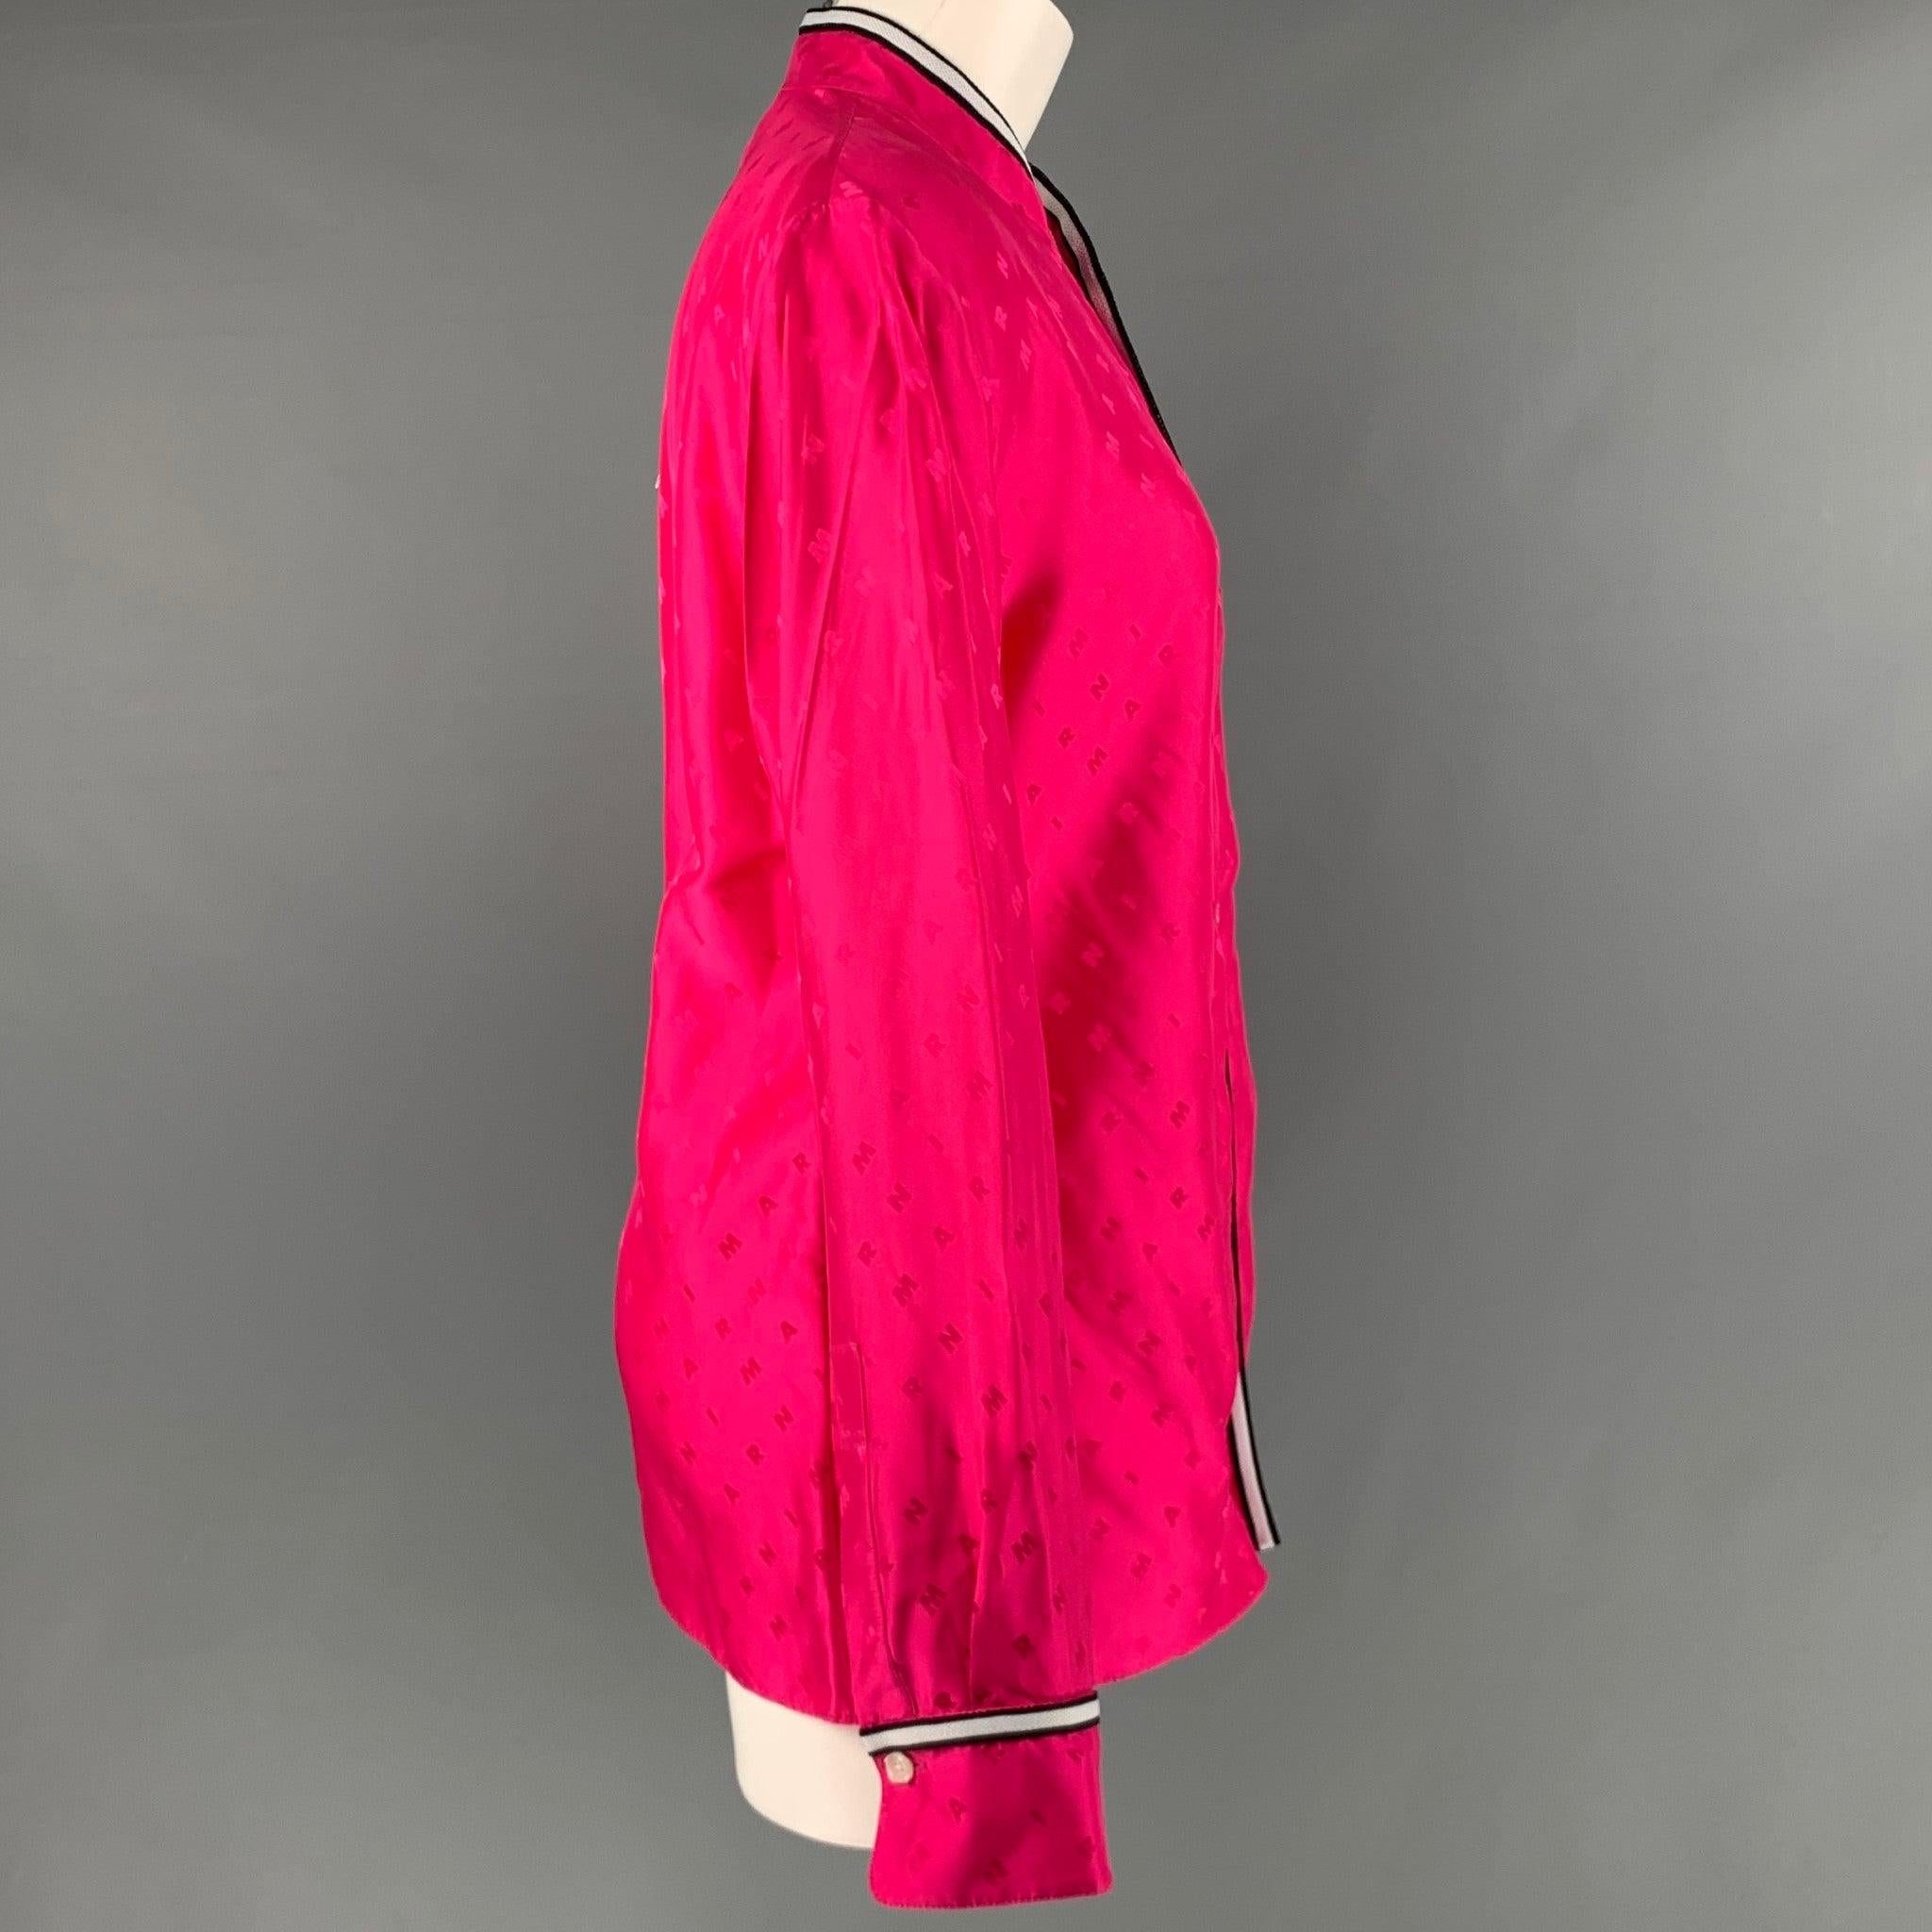 MARNI Langarmhemd
aus rosafarbenem Viskosestoff mit Marni-Monogramm-Muster, Nehru-Kragen mit schwarz-weißem Kontrastbesatz, einer kleinen Tasche und Knopfverschluss. Hergestellt in Italien &New with Tags. 

Markiert:   44 

Abmessungen: 
